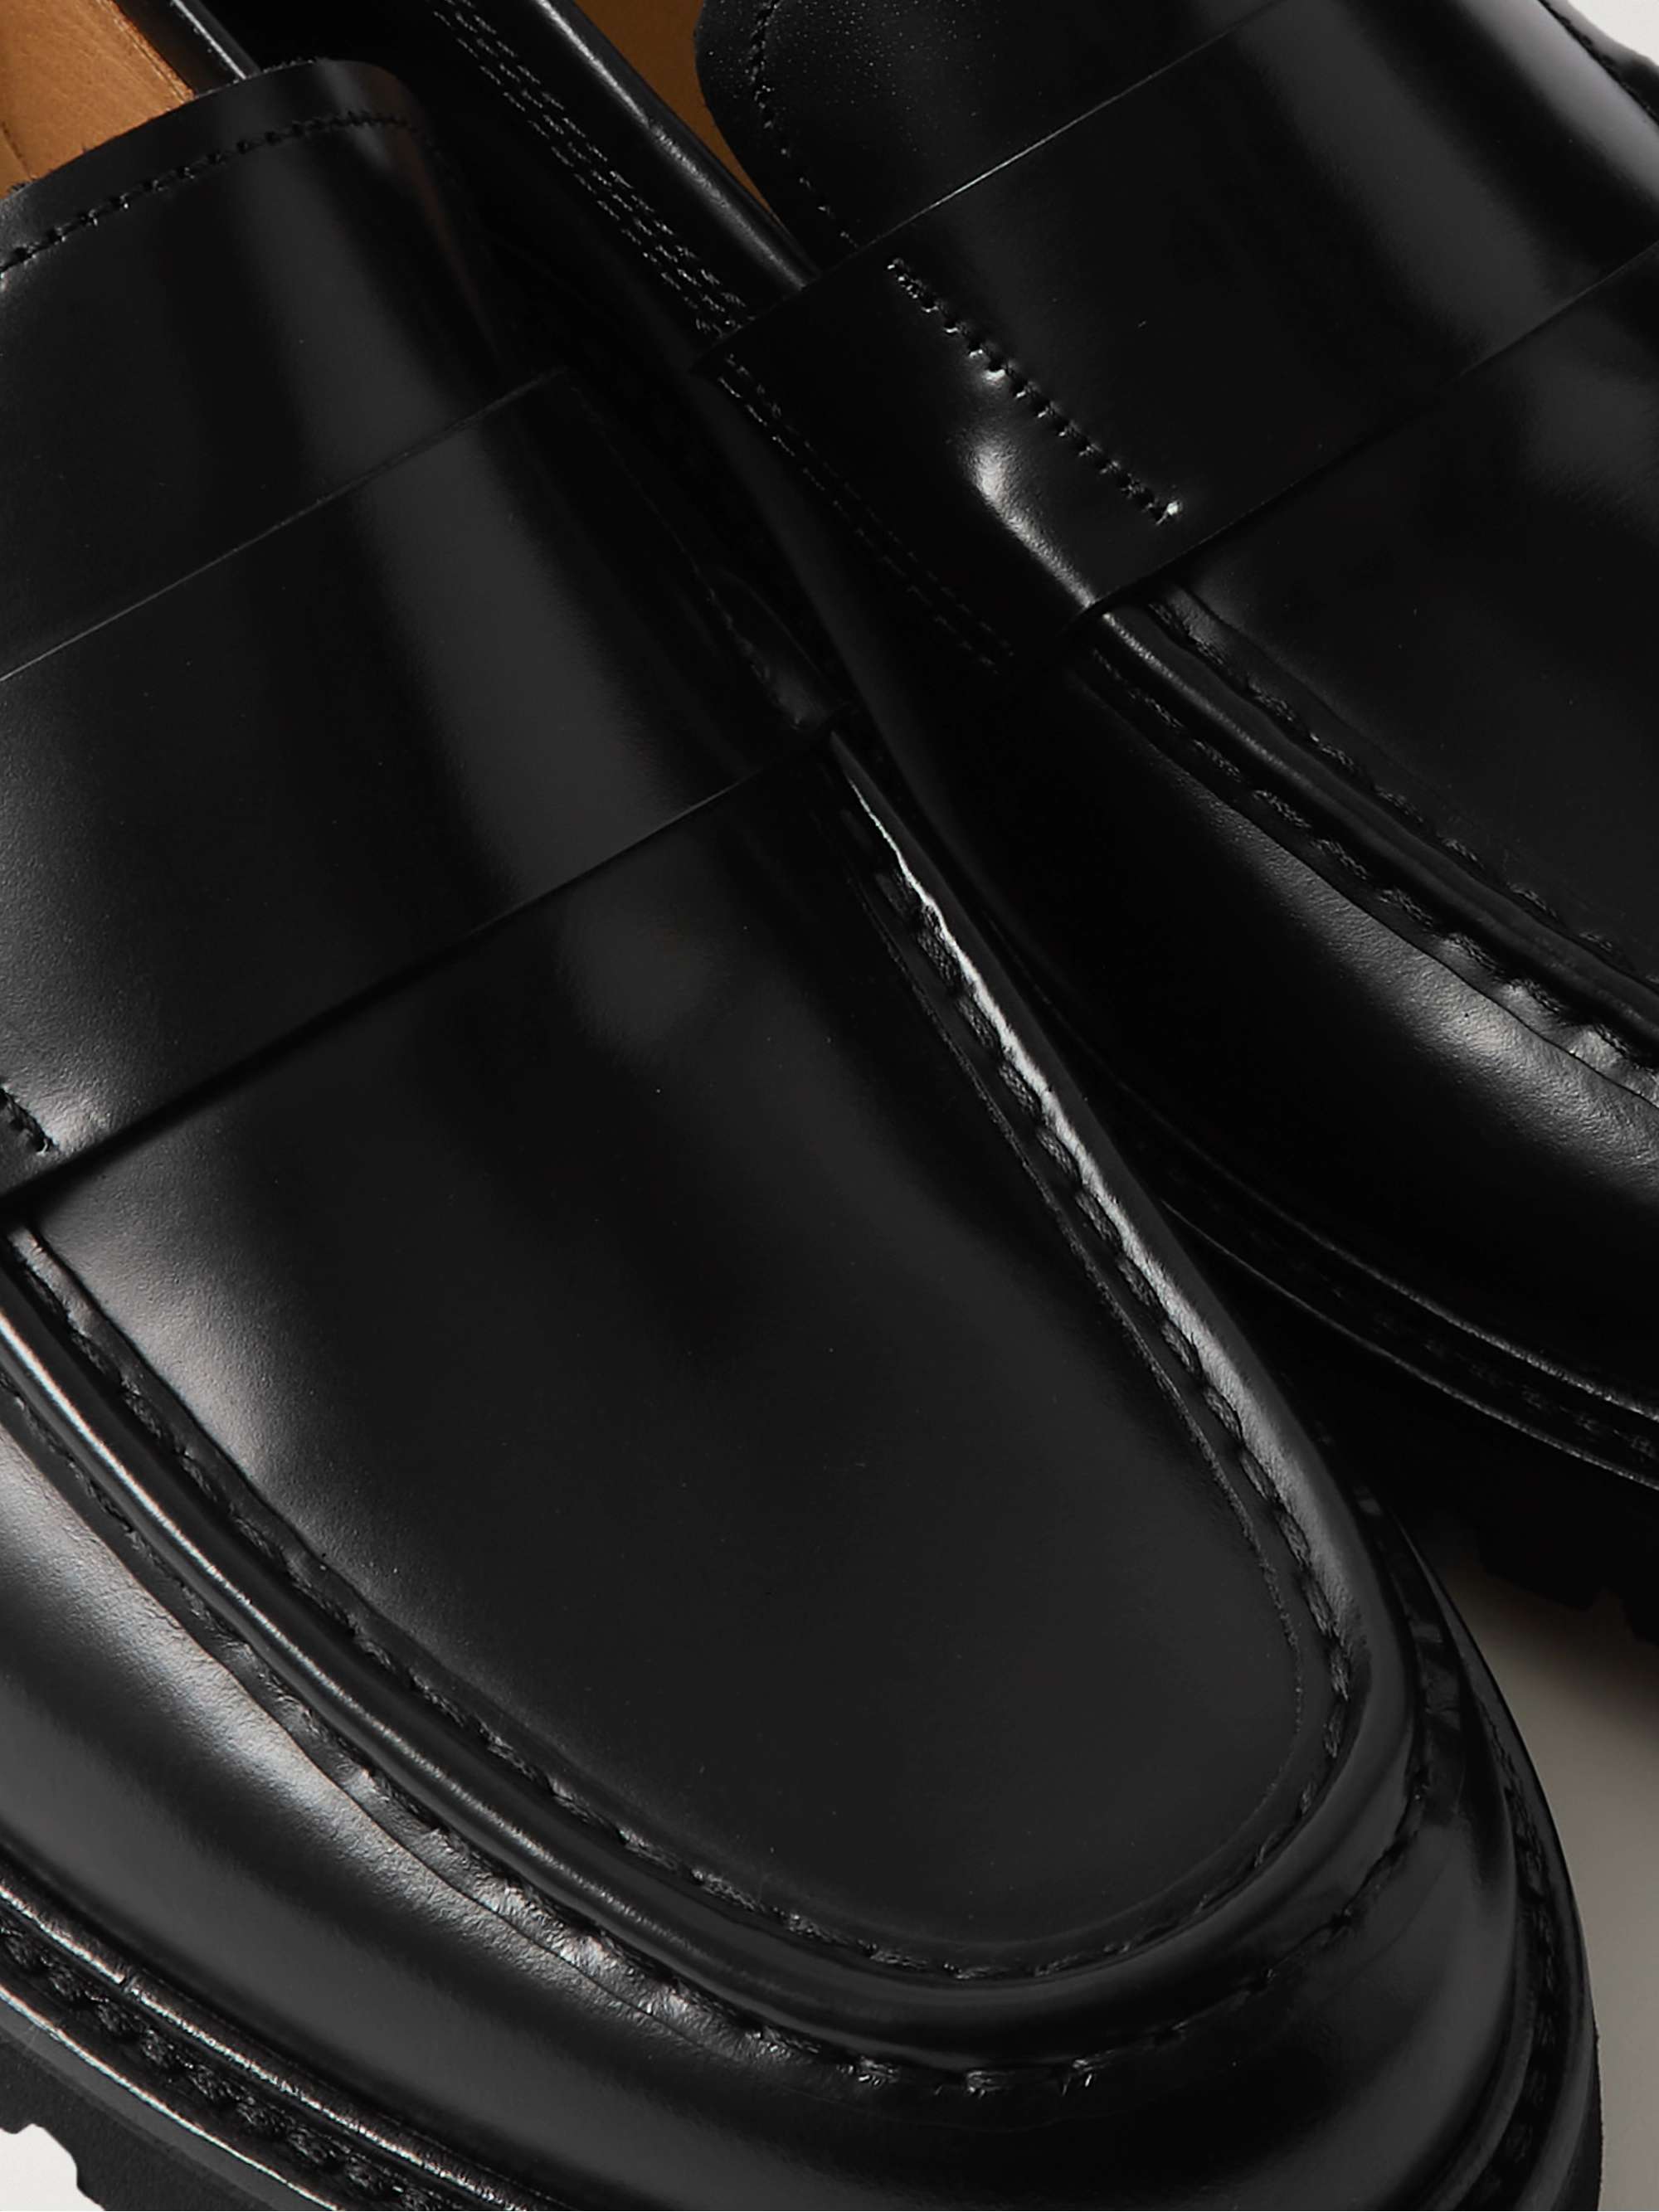 VINNY'S Belt Polished-Leather Loafers